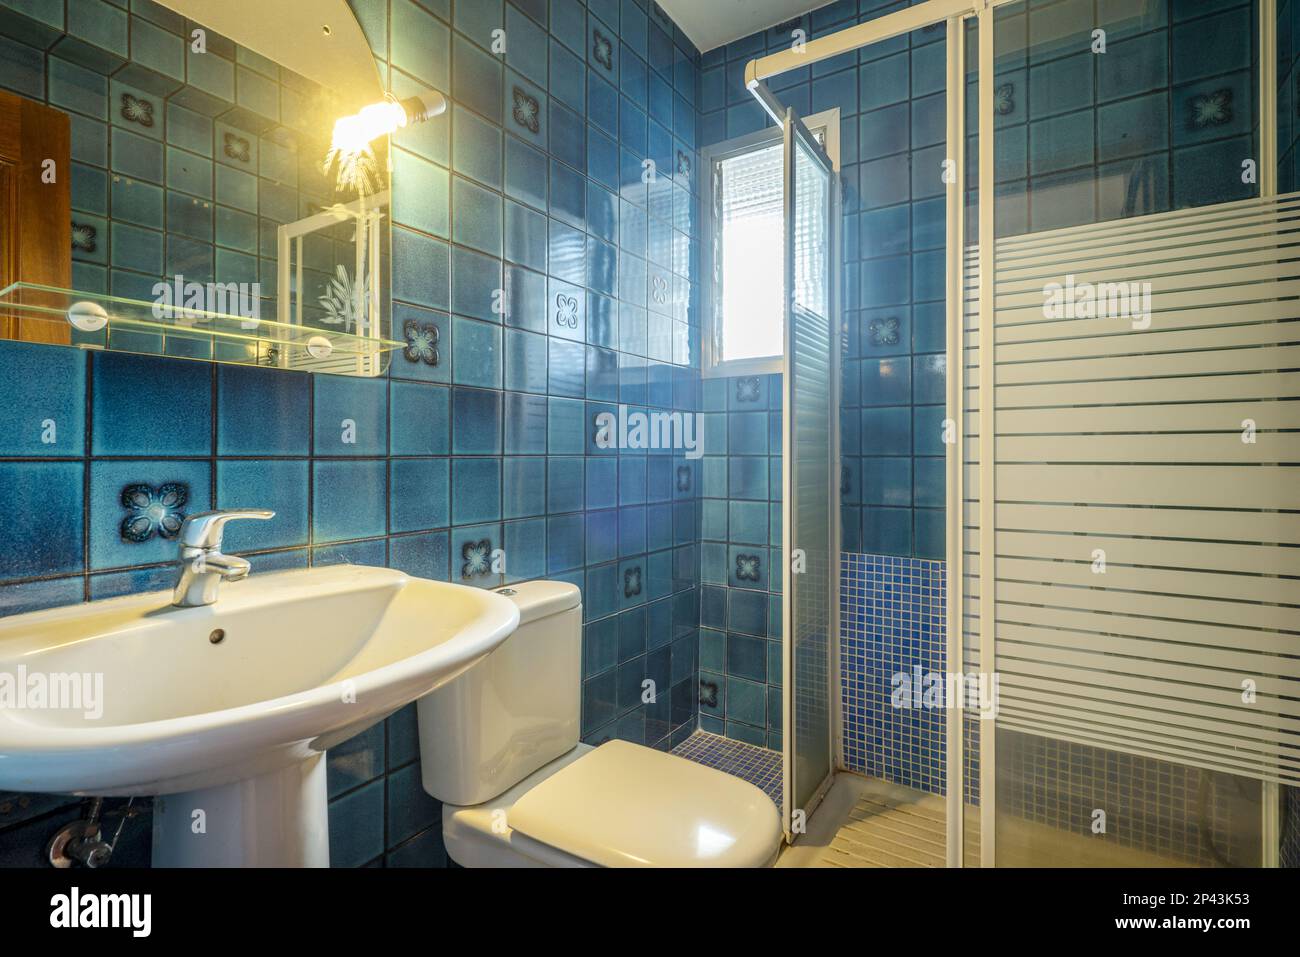 Badezimmer mit Spiegel an der Wand mit Glasregal, Porzellanwaschbecken,  quadratischer weißer Duschkabine und superalten blauen Fliesen  Stockfotografie - Alamy